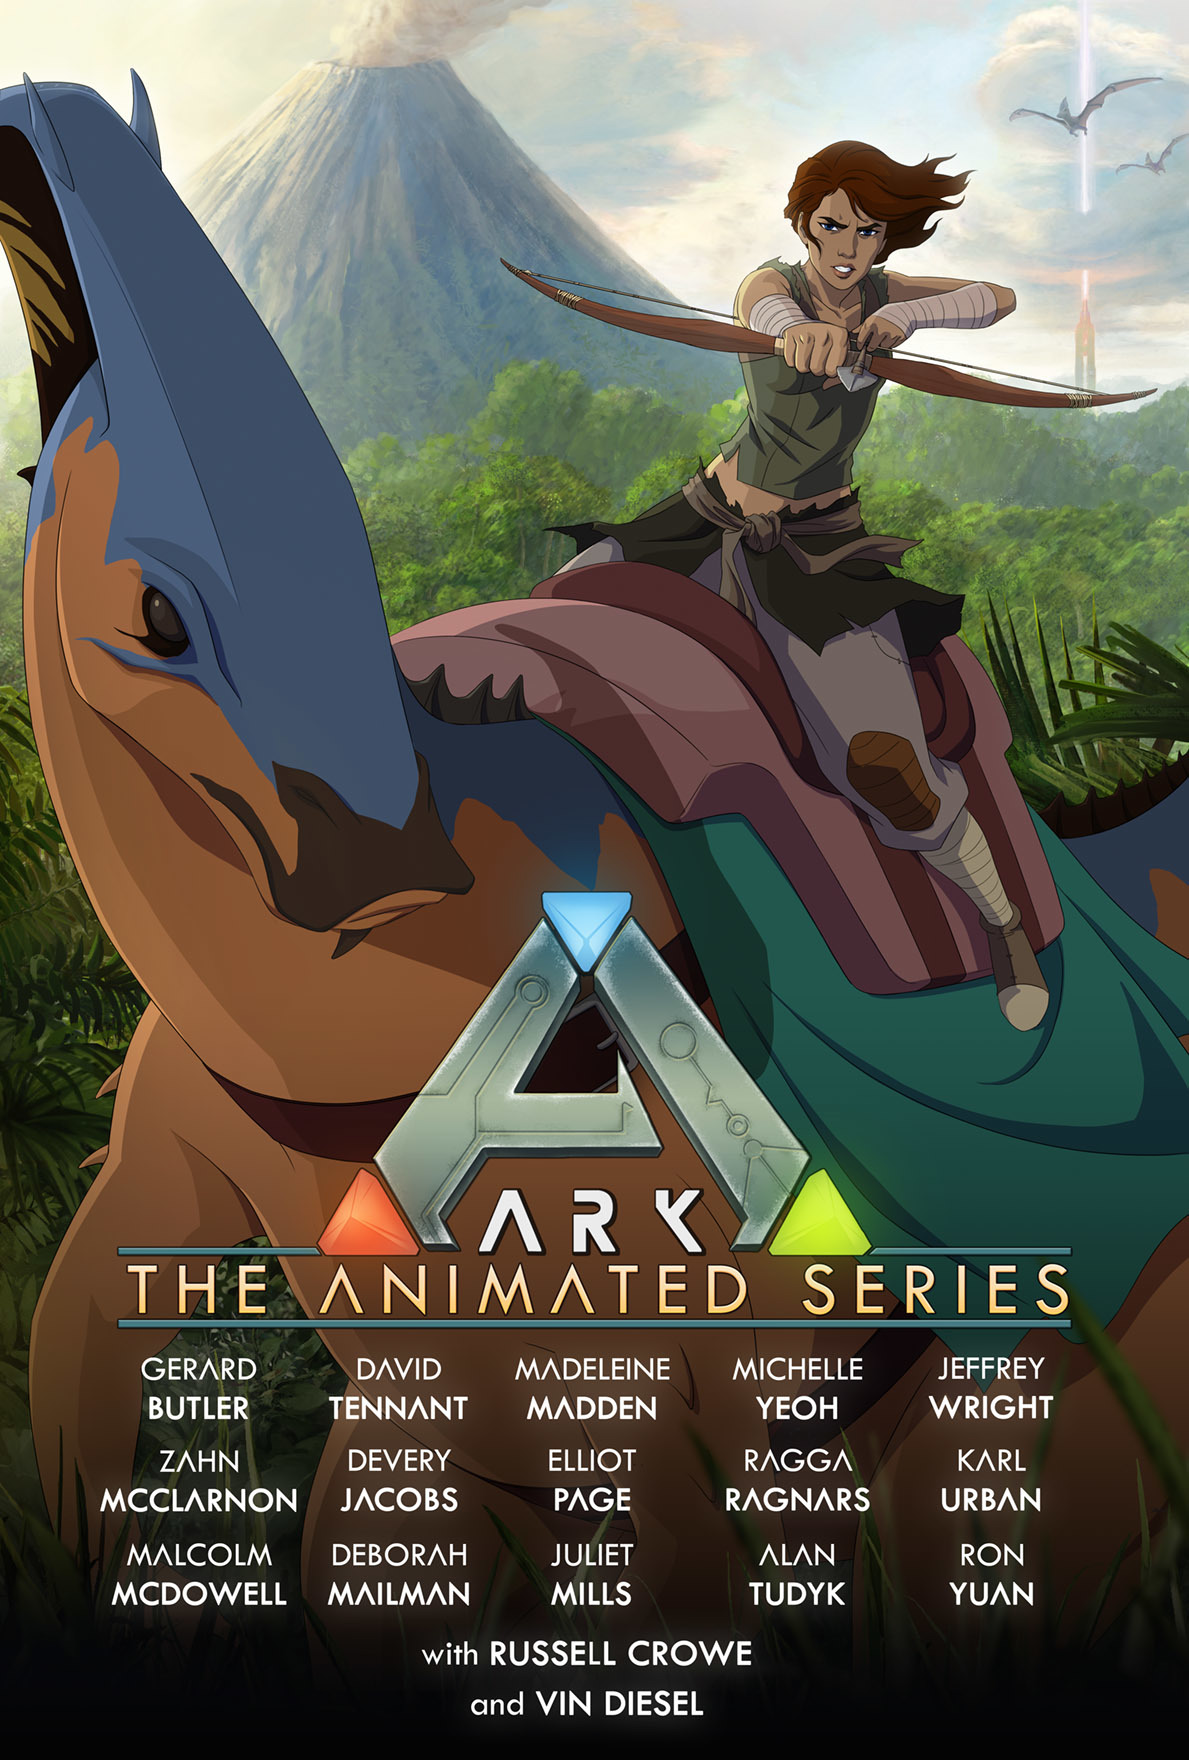 ARK: Genesis Part II voice cast adds David Tennant, Madeleine